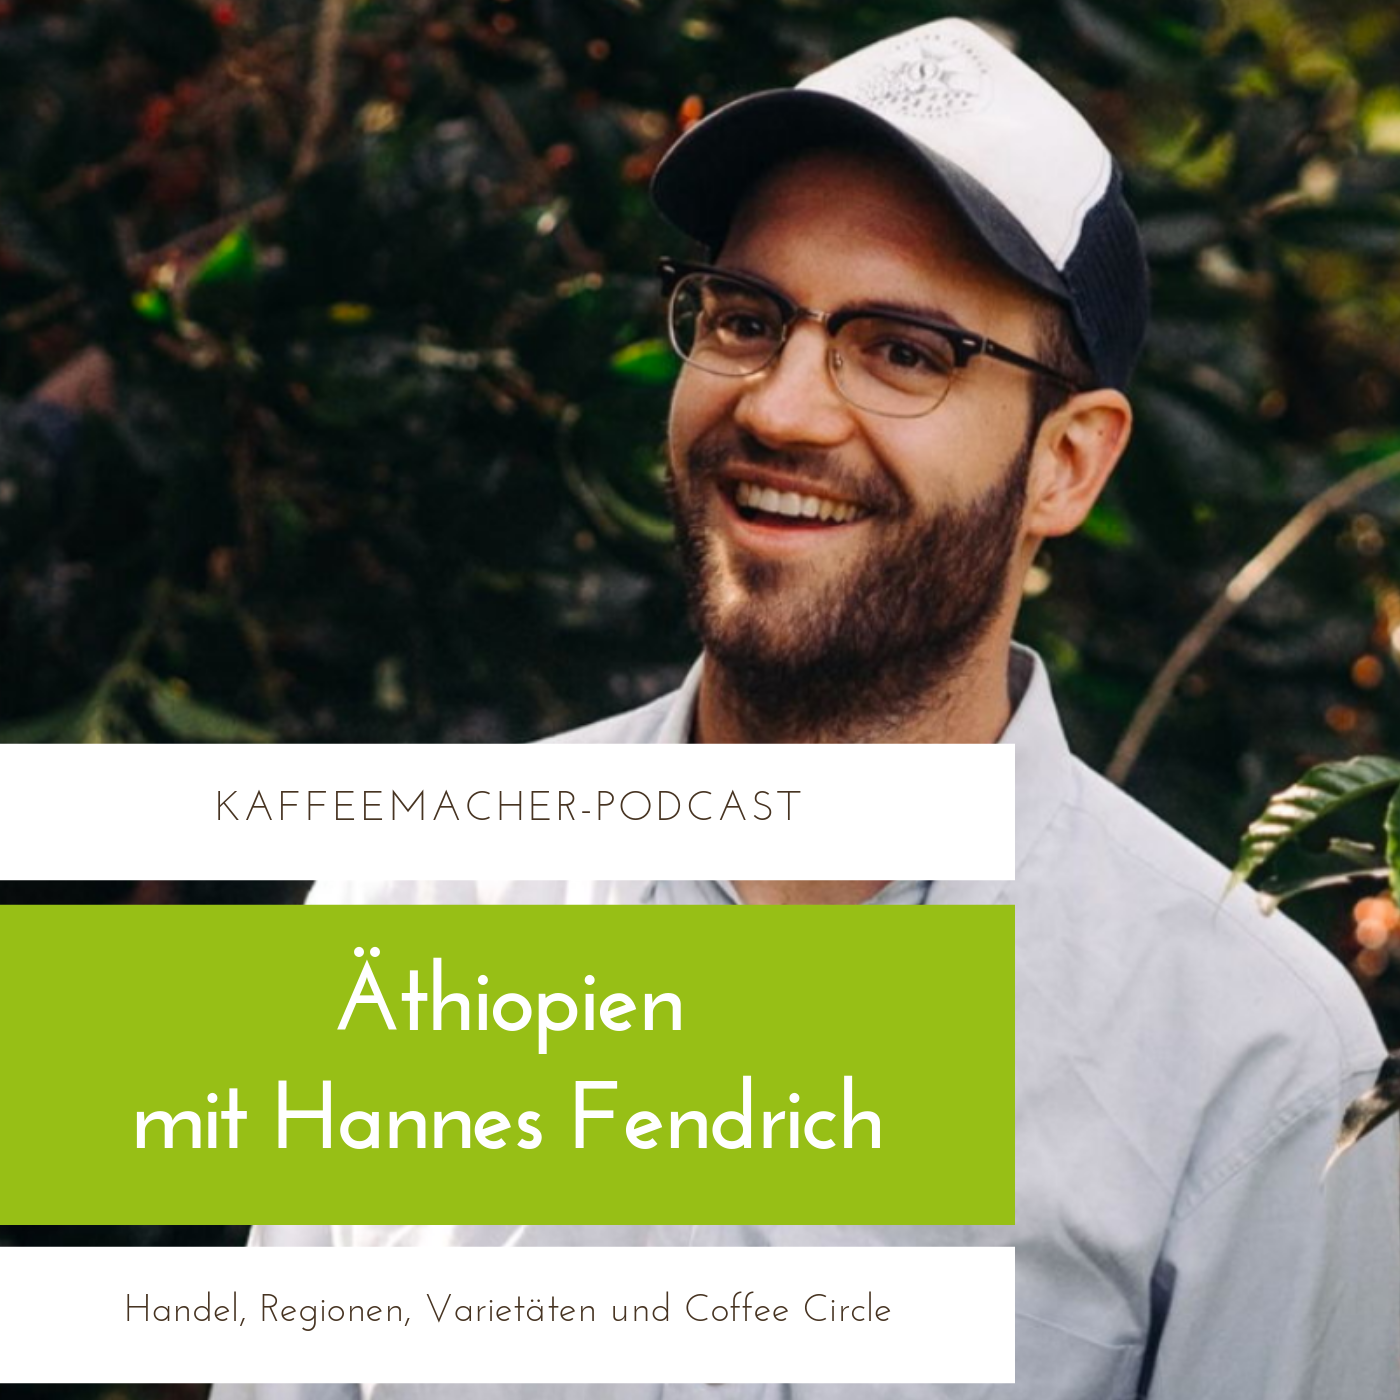 Hannes Fendrich über das Kaffeeland Äthiopien